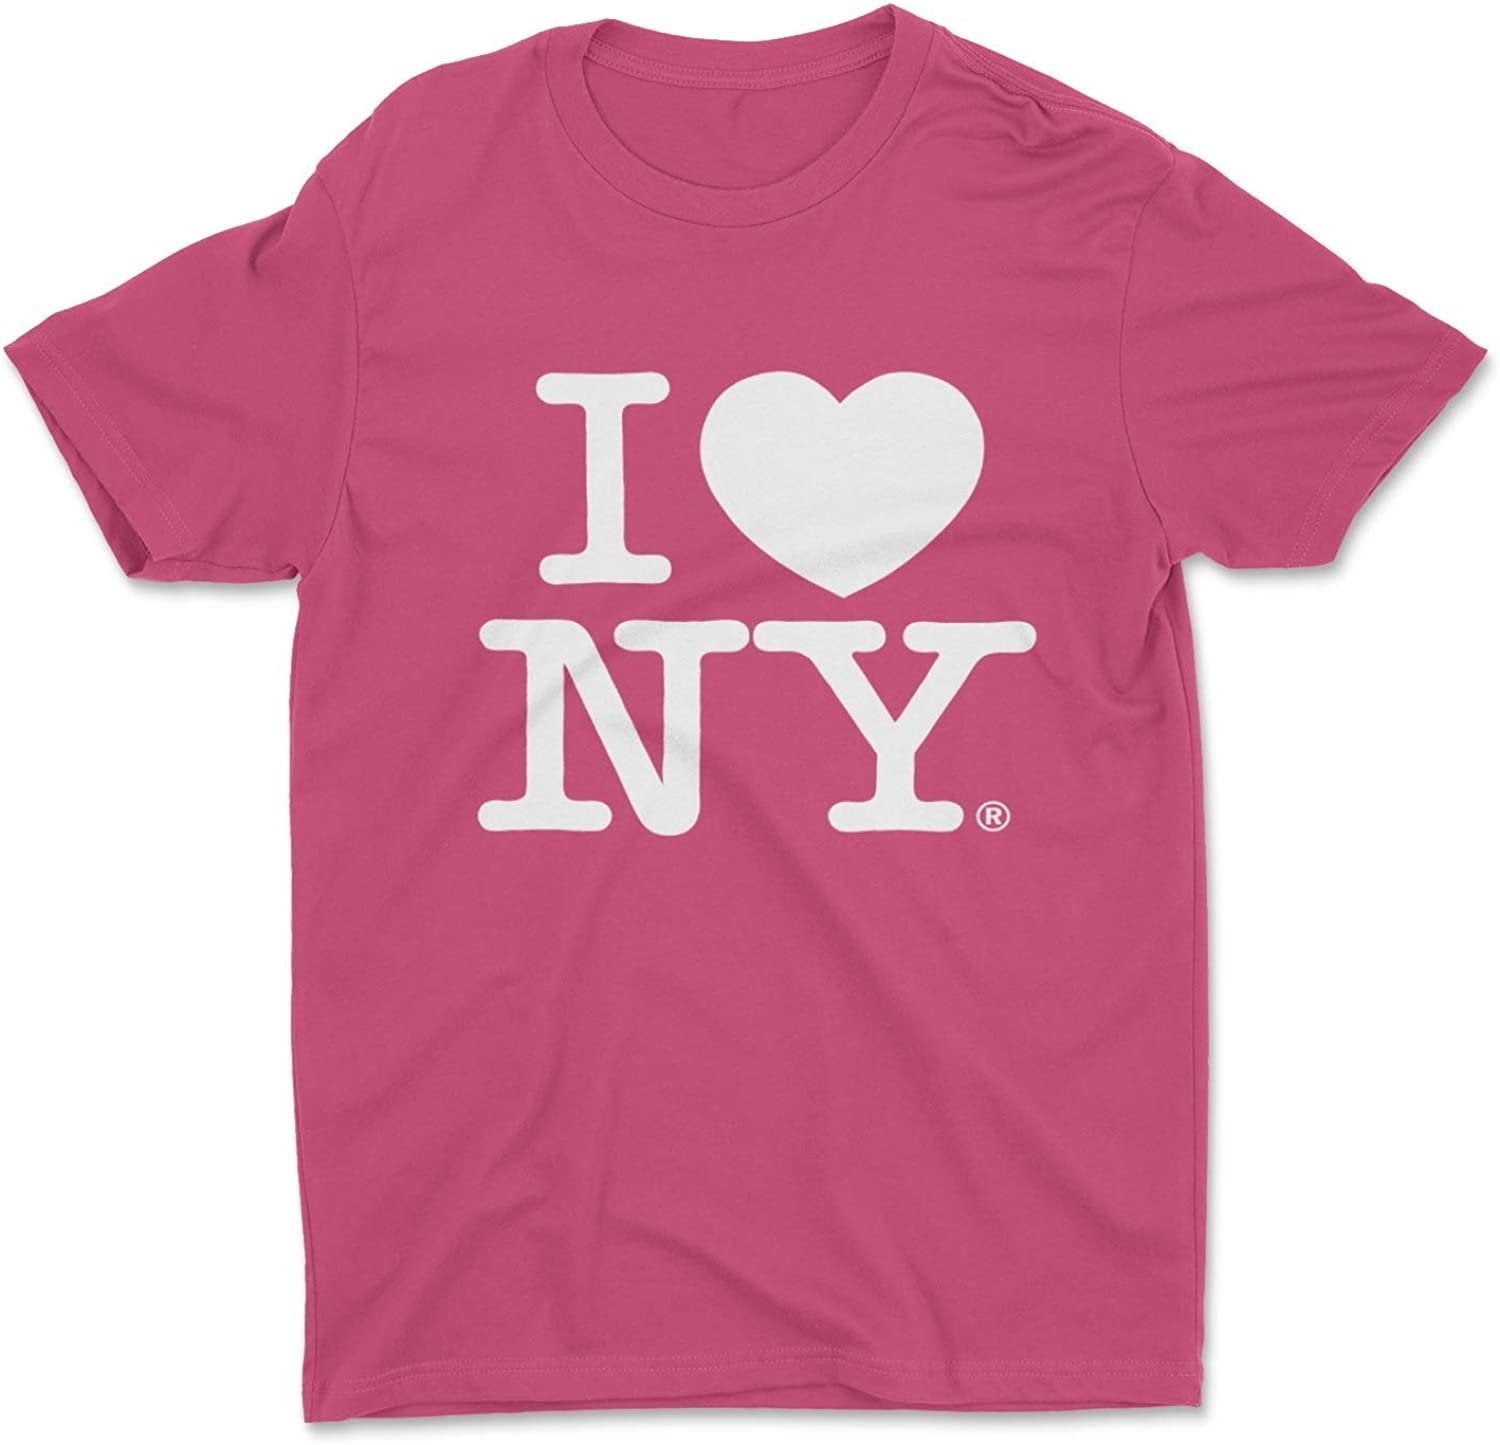 I Love NY Kids T-Shirt Tee Framboise